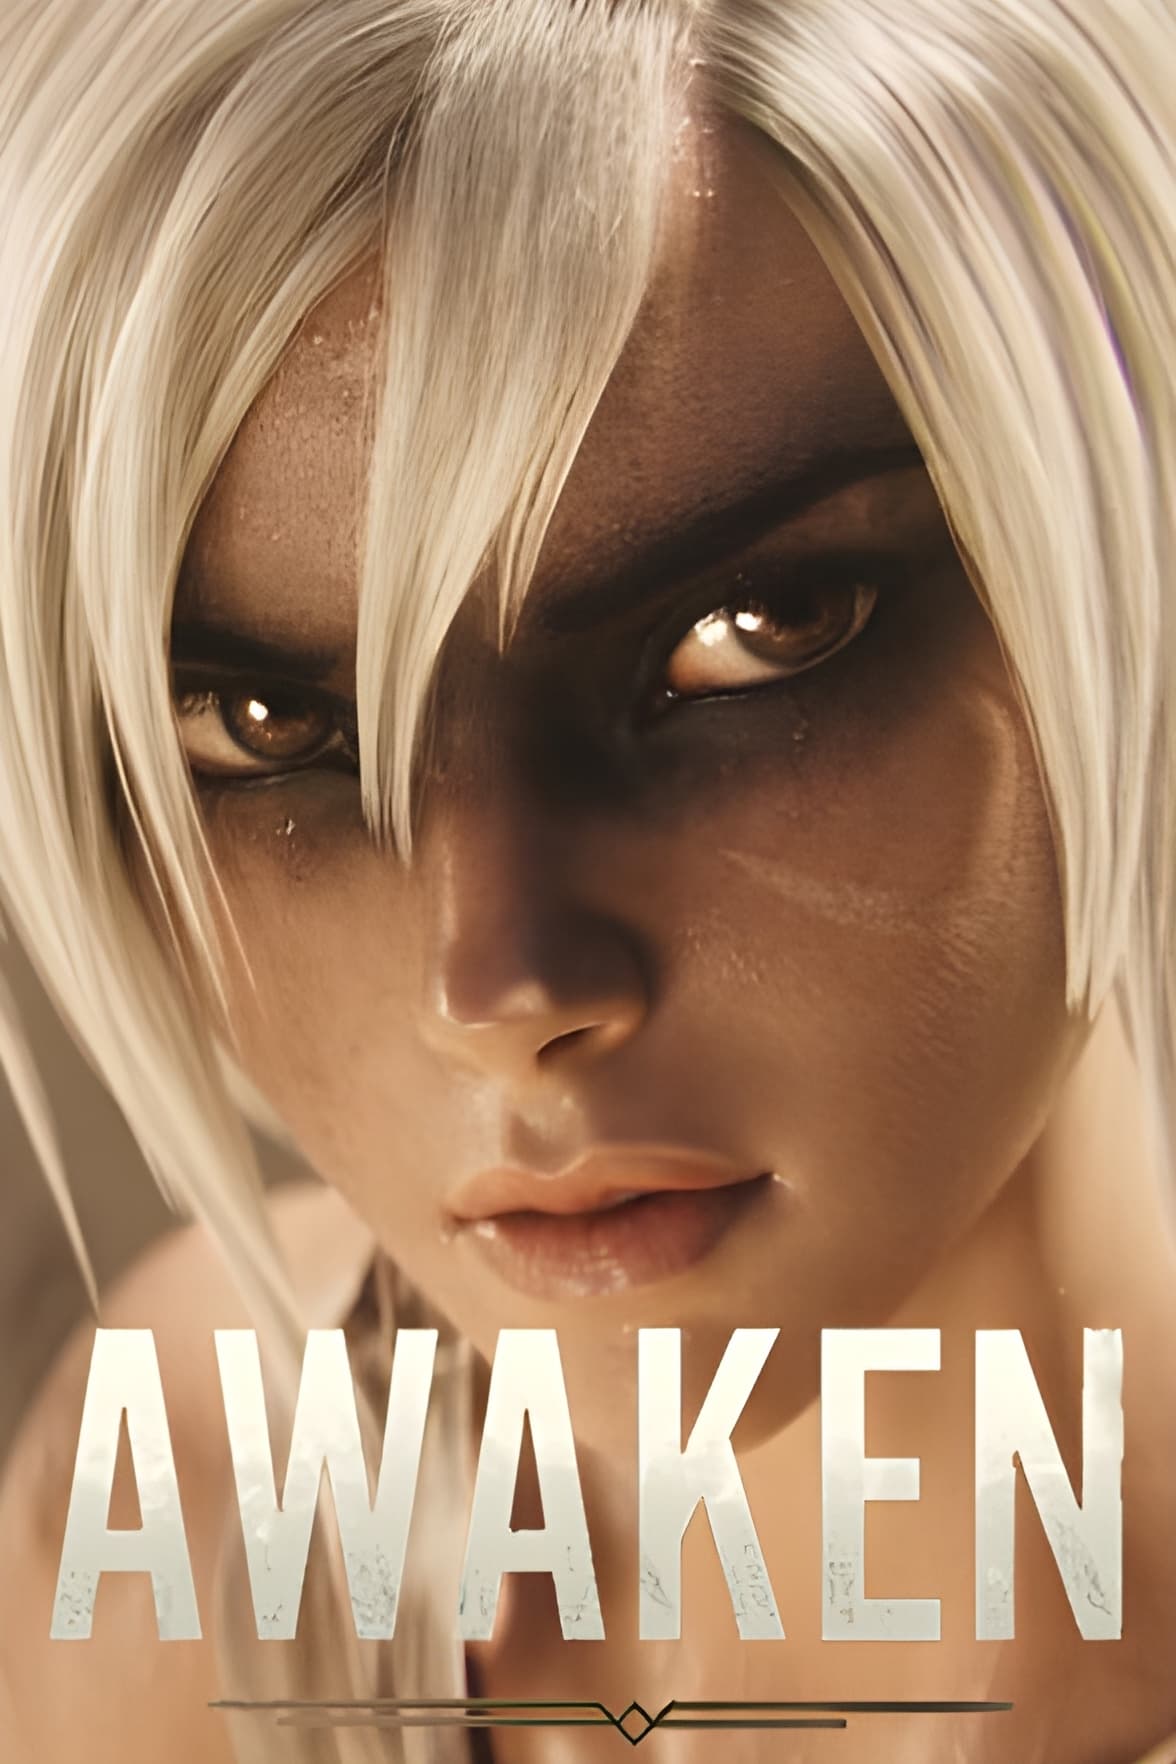 League of Legends: Awaken